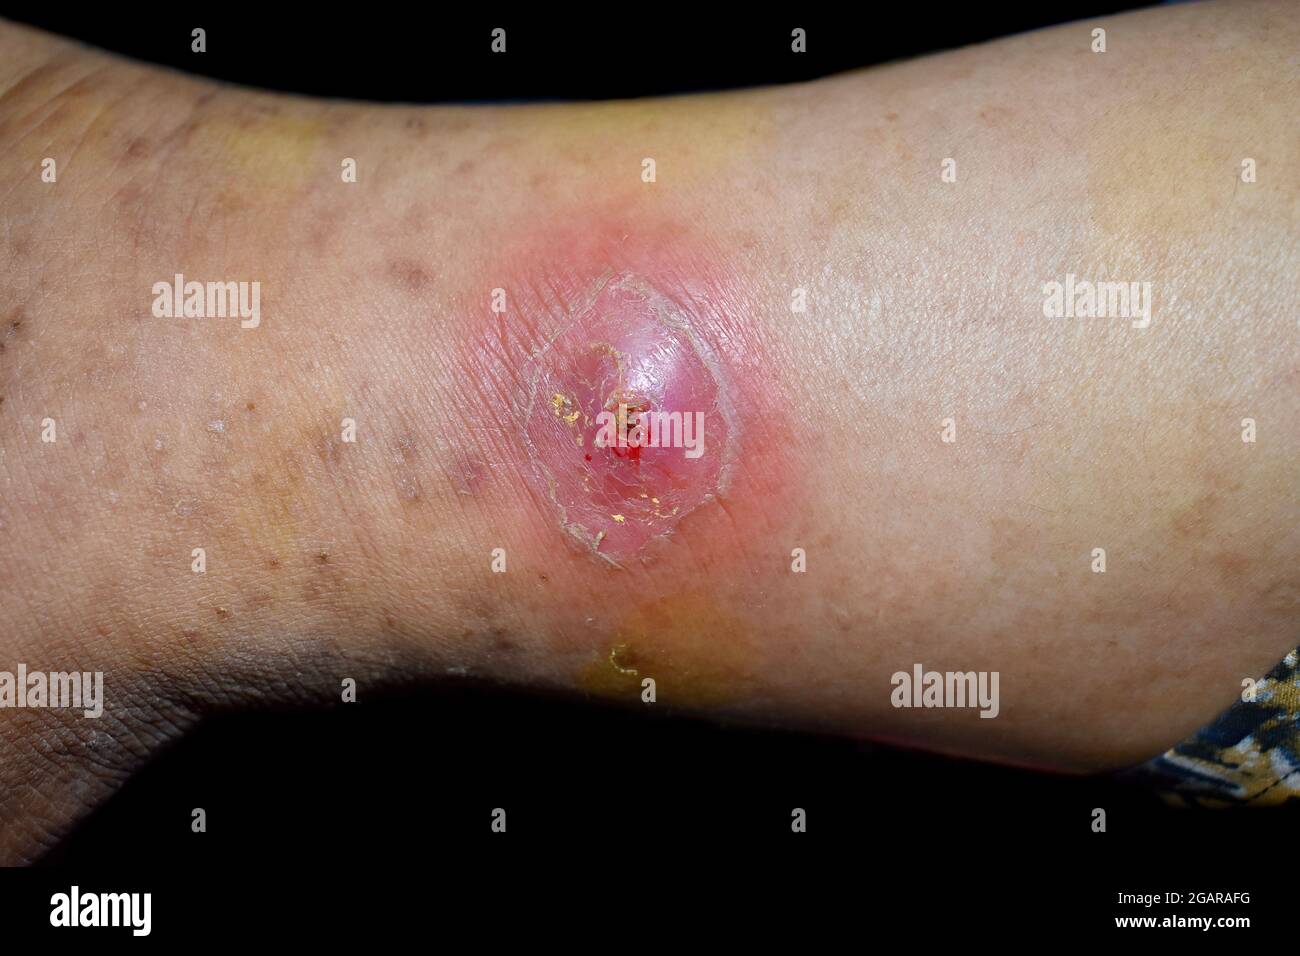 Absceso inminente con celulitis circundante o infección cutánea por estafilococos/estreptococos en la pierna derecha de un paciente asiático birmano. Vista de primer plano. Es Foto de stock